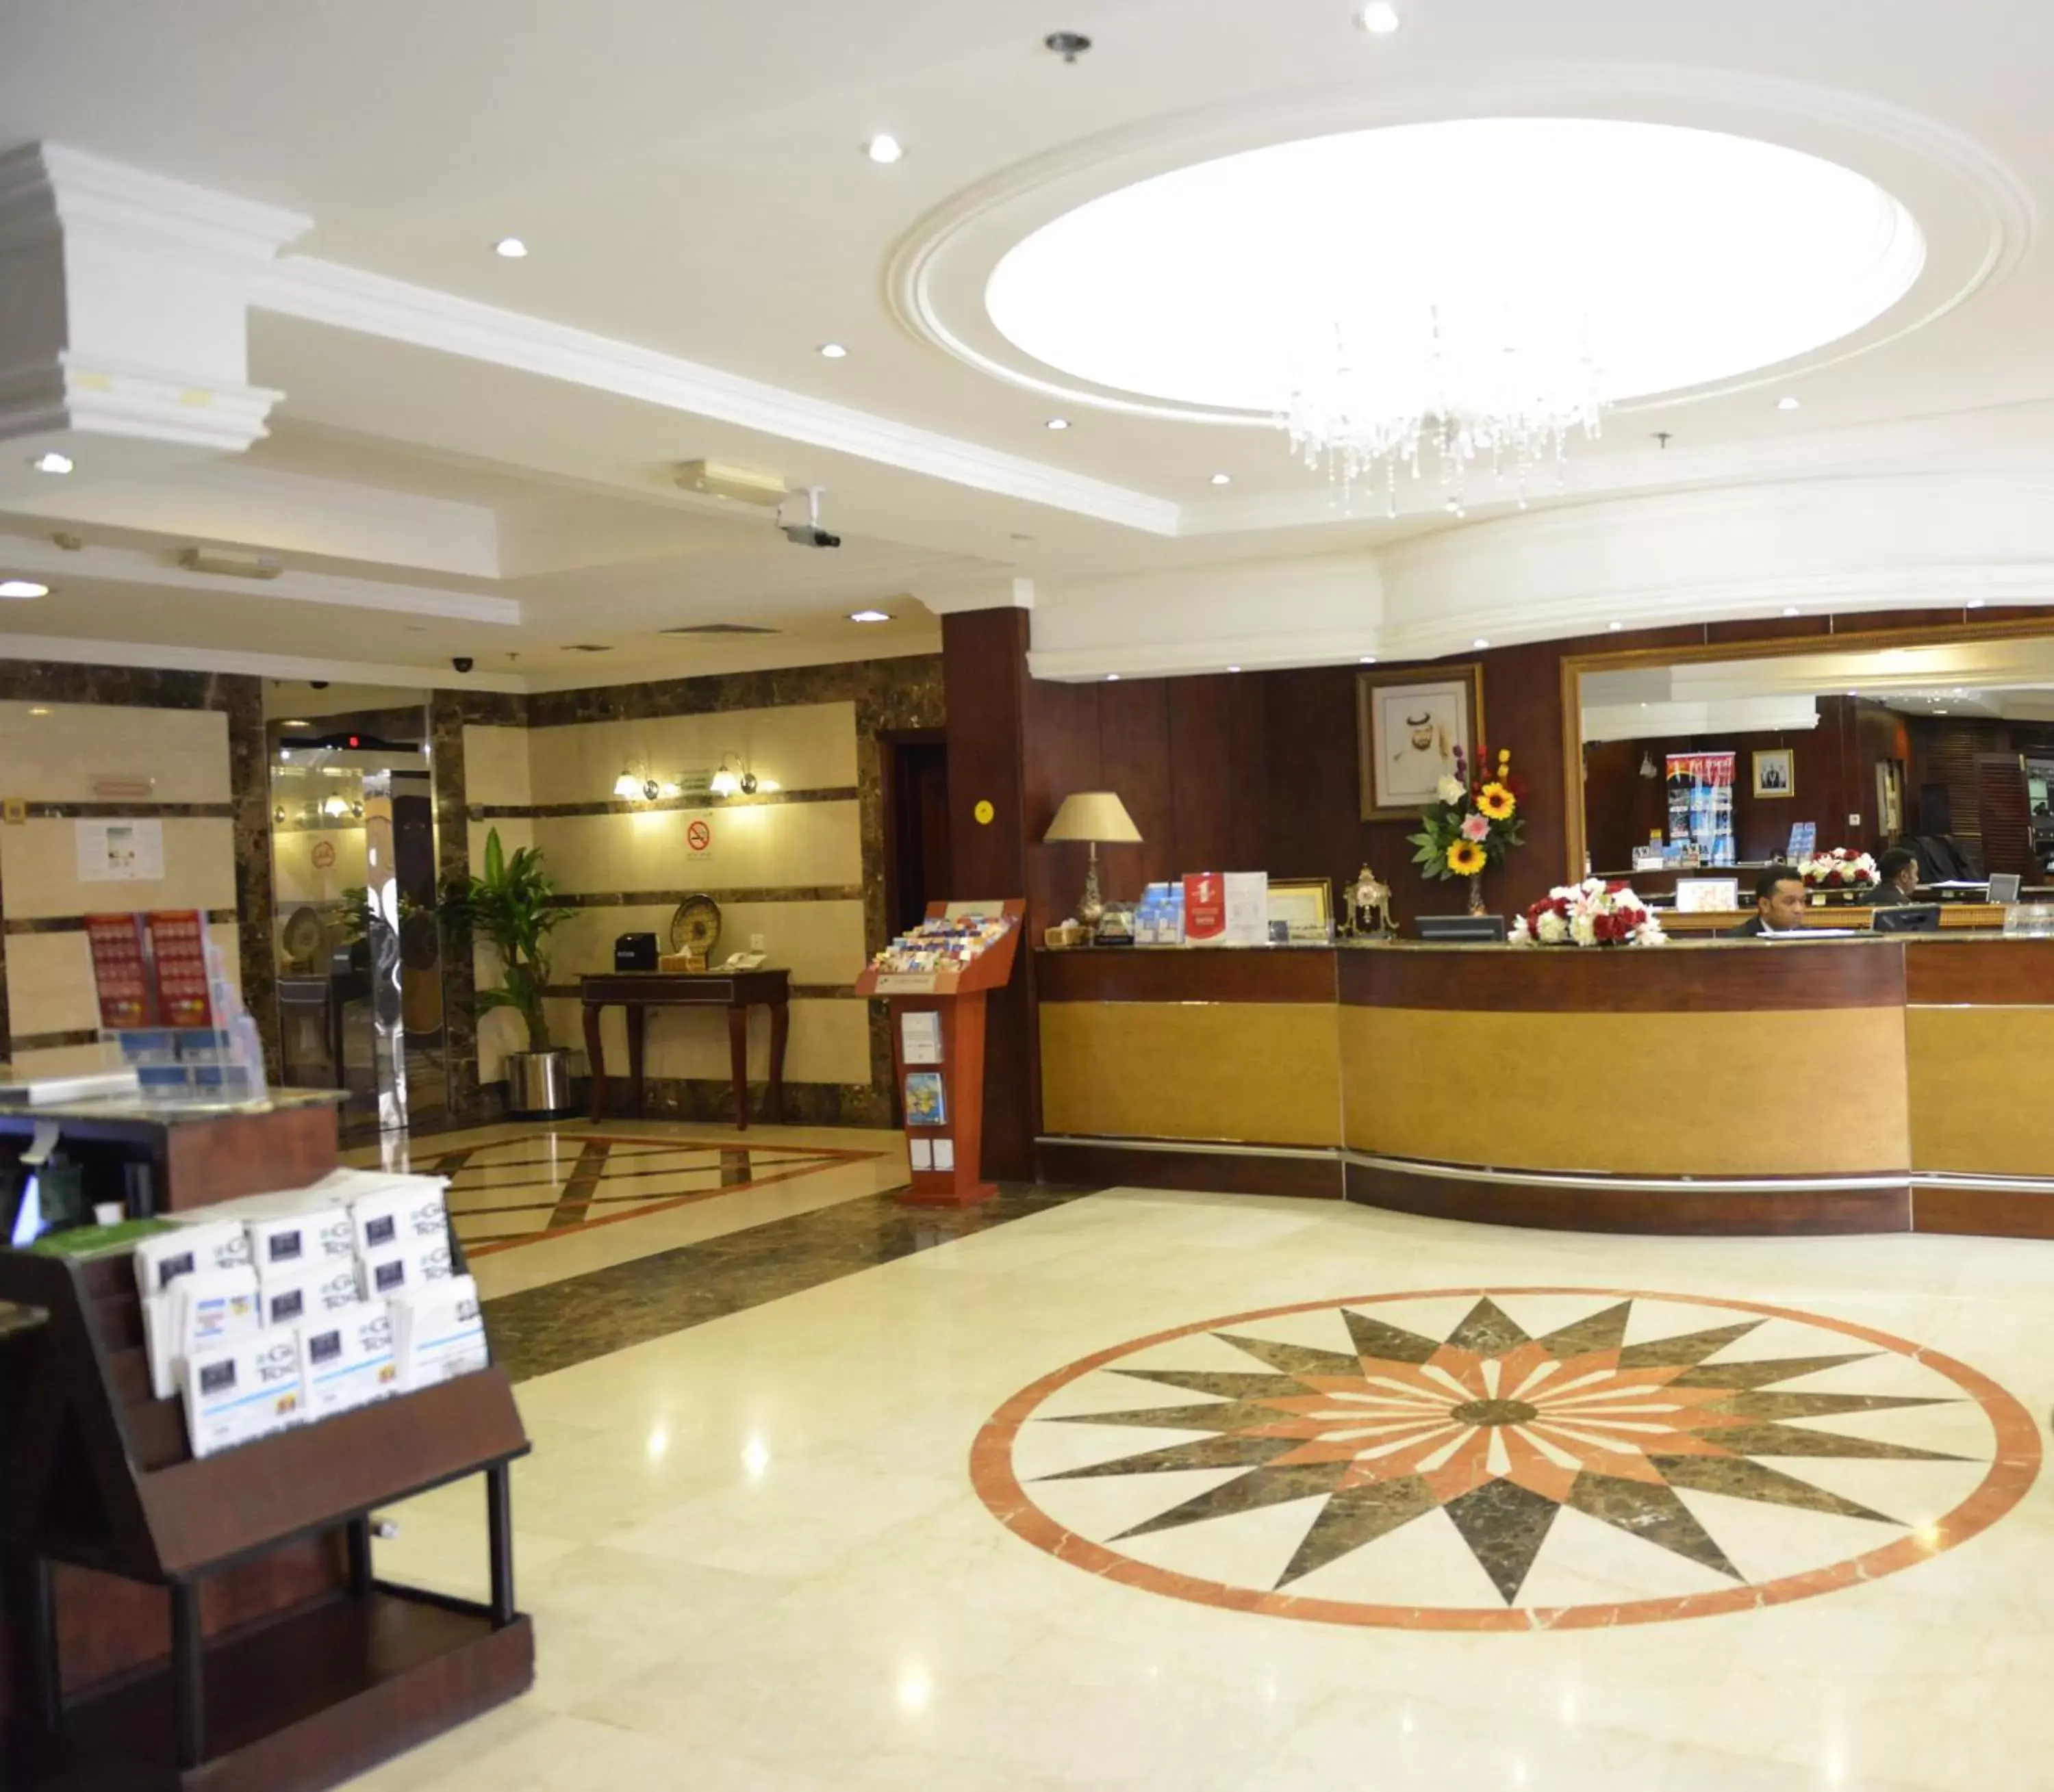 Lobby or reception, Lobby/Reception in Al Manar Hotel Apartments